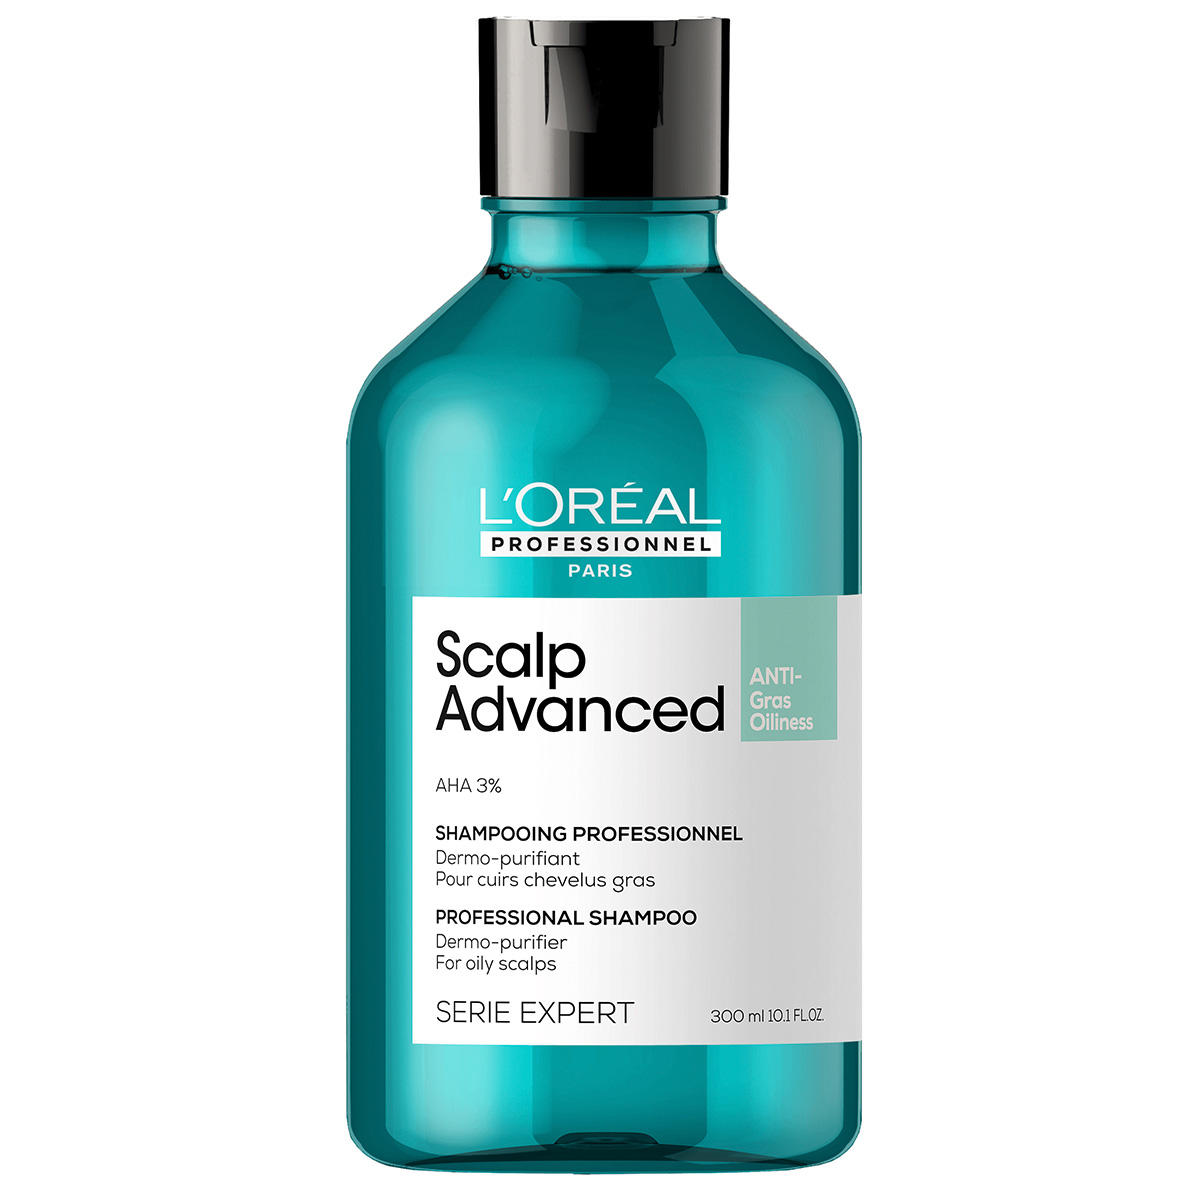 L'Oréal Professionnel Paris Serie Expert Scalp Advanced Anti-Oiliness Dermo-Purifier Shampoo 300 ml - 1